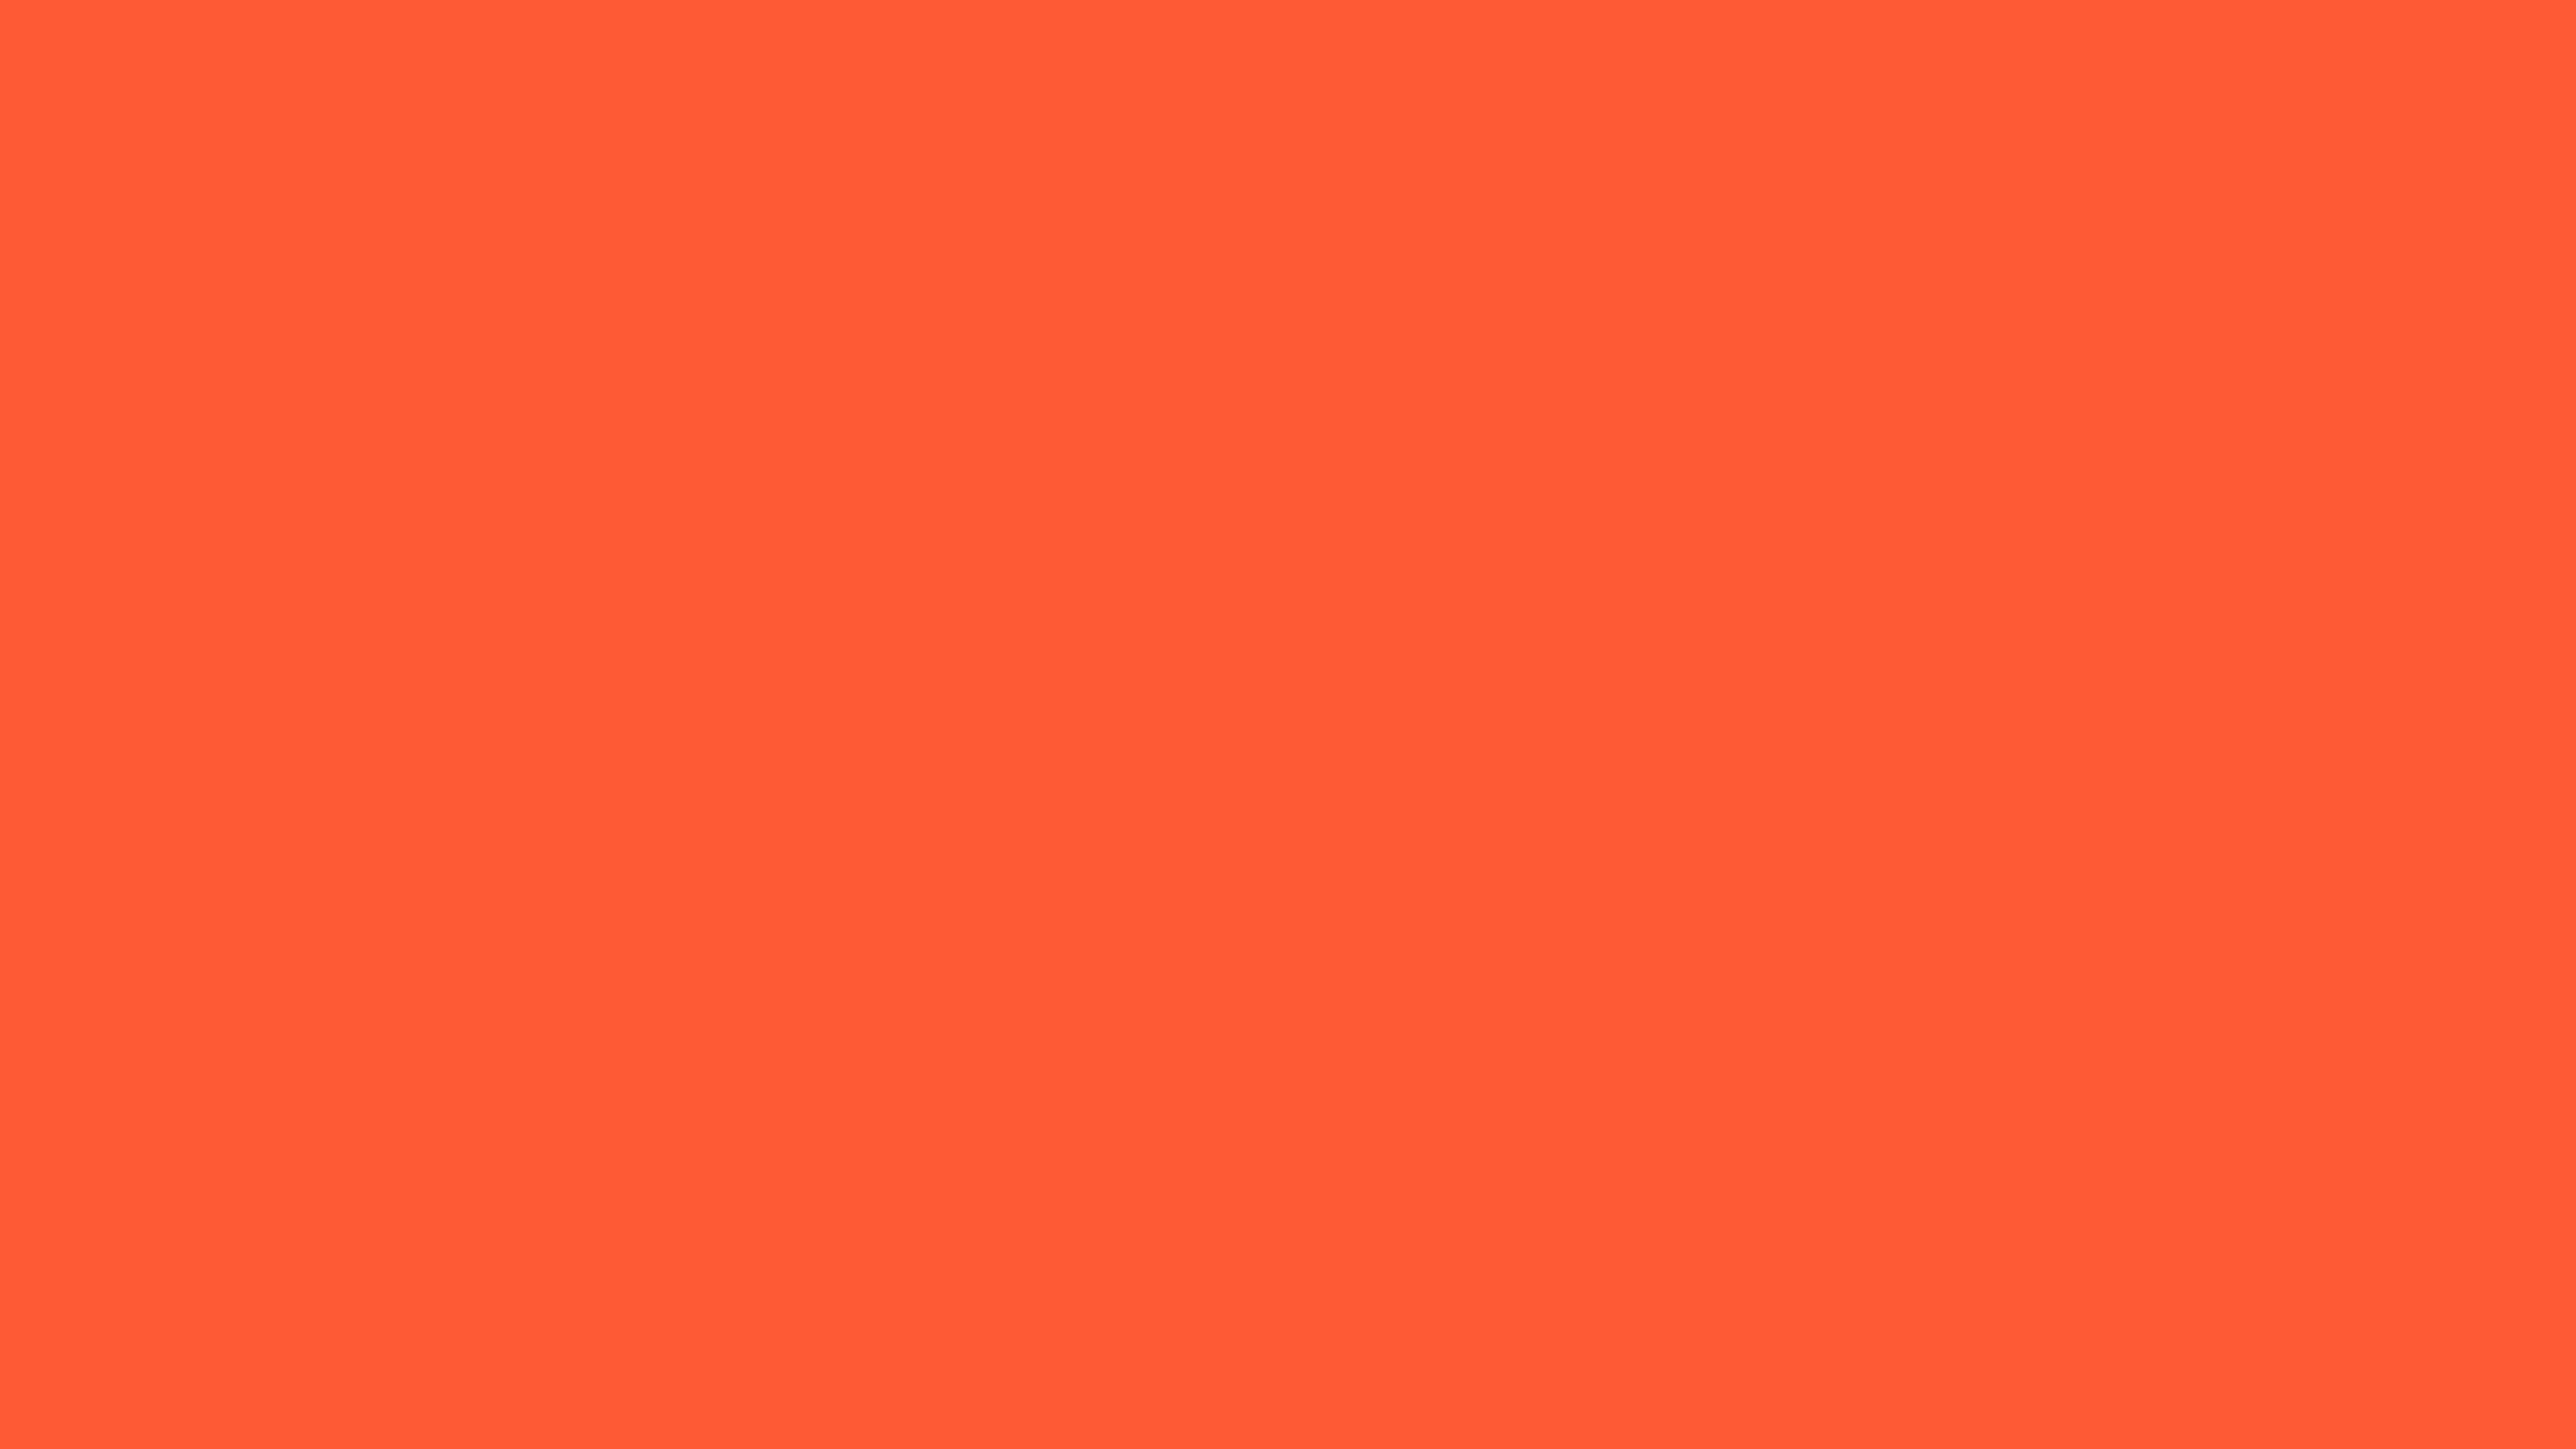 3840x2160 Portland Orange Solid Color Background